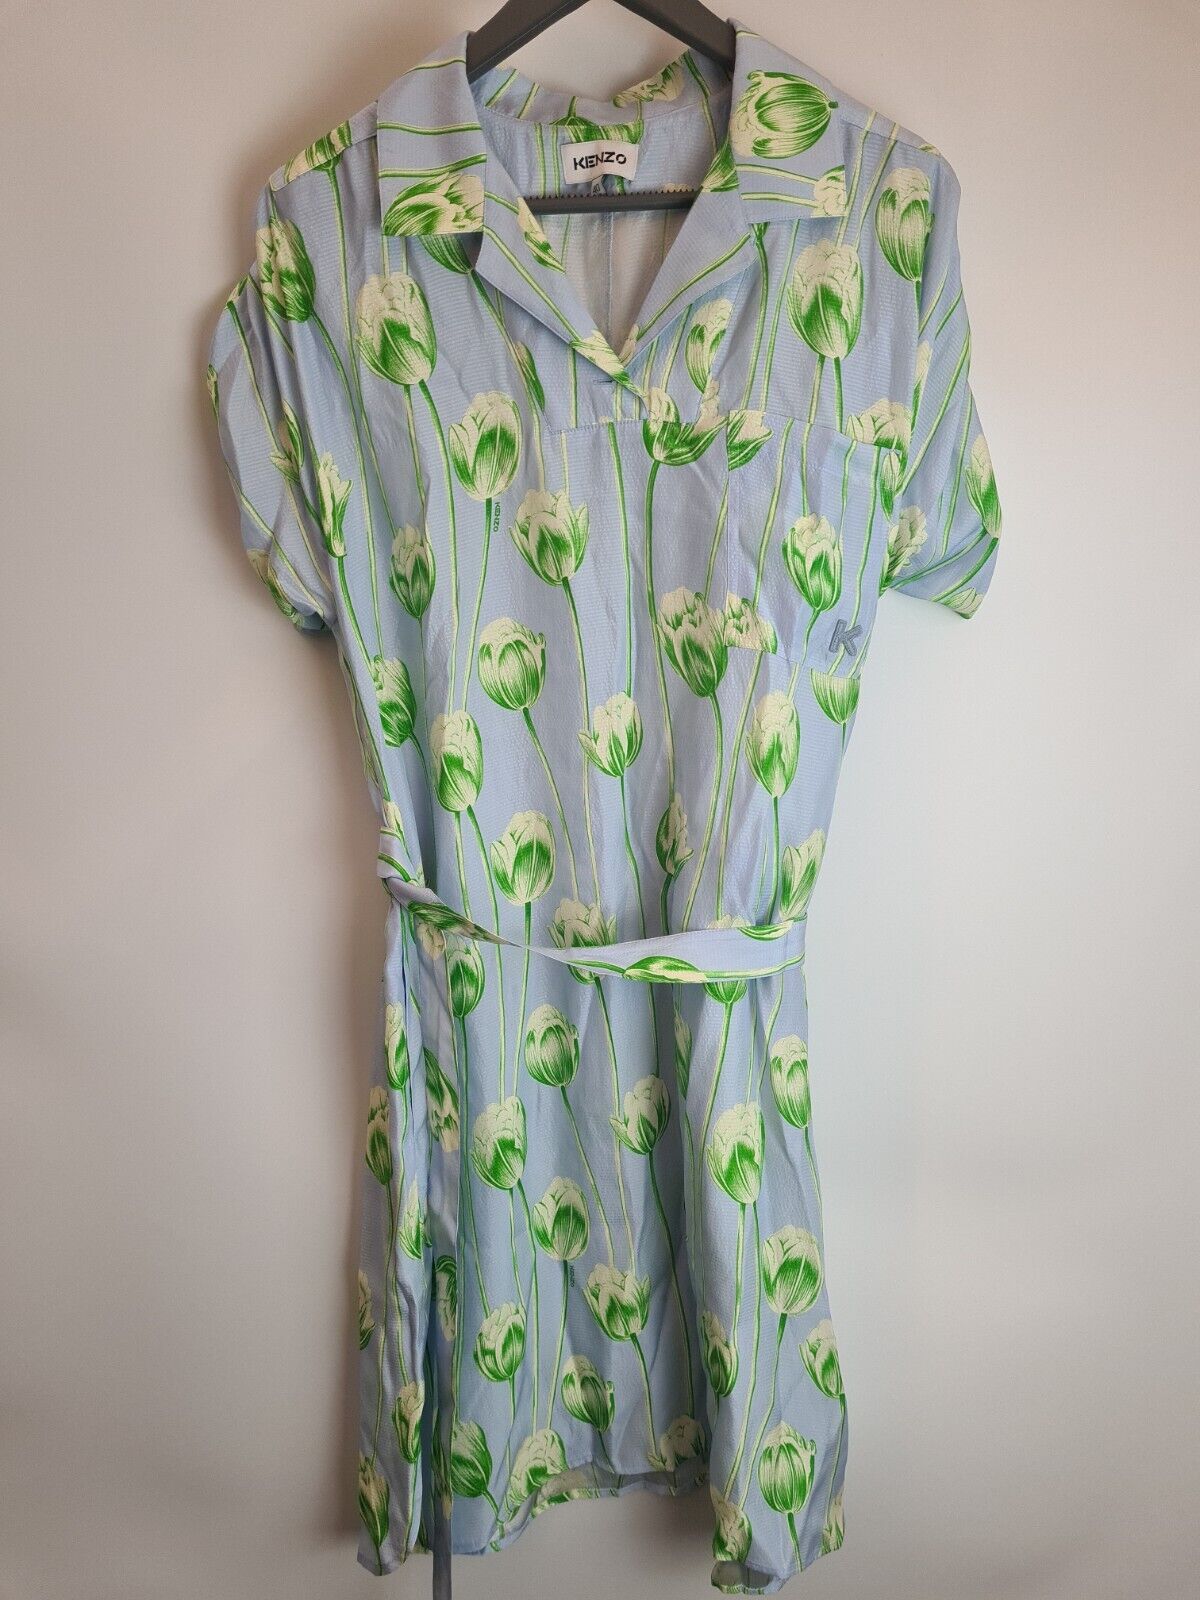 Kenzo Printed Shirting Waisted Dress Size 42/ UK SIZE 14**** V385